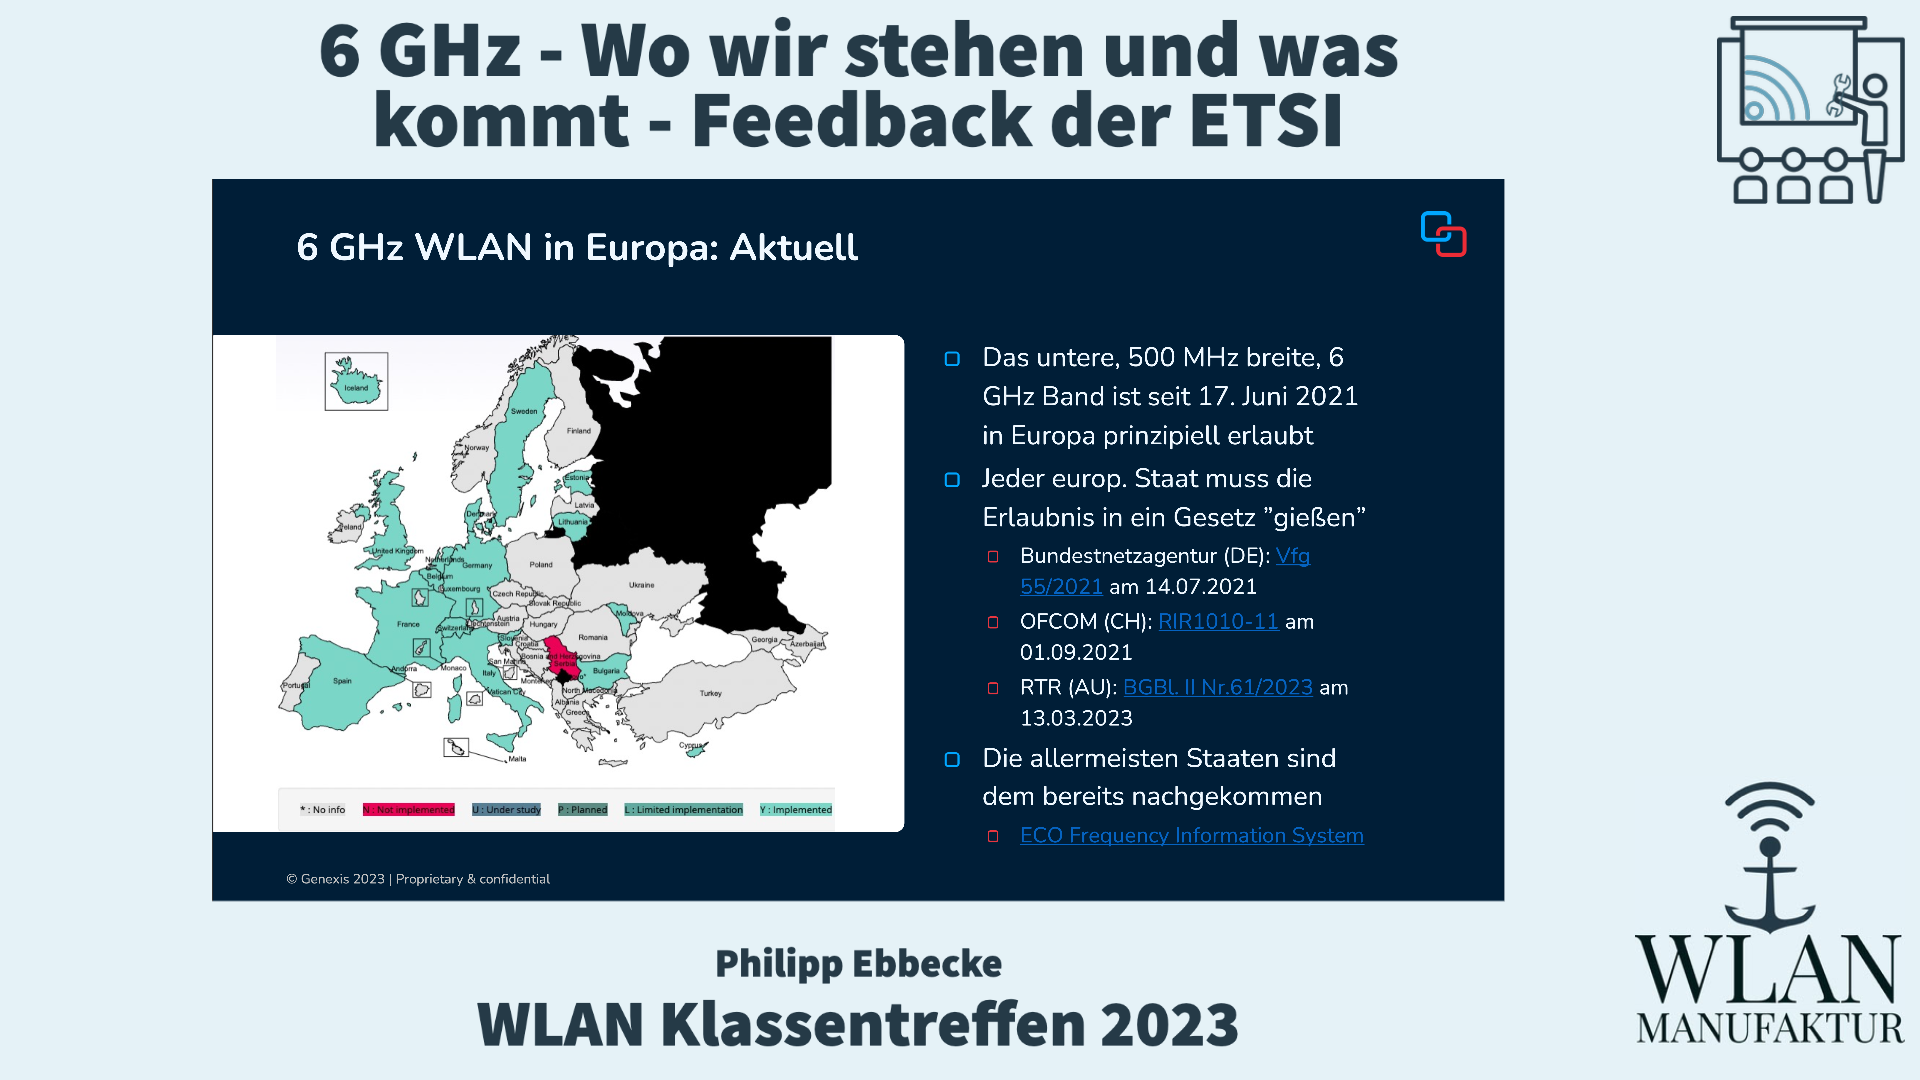 Load video: Aufzeichnung der Präsentation vom WLAN Klassentreffen - 6 GHz - Wo wir stehen und was kommt - Feedback der ETSI